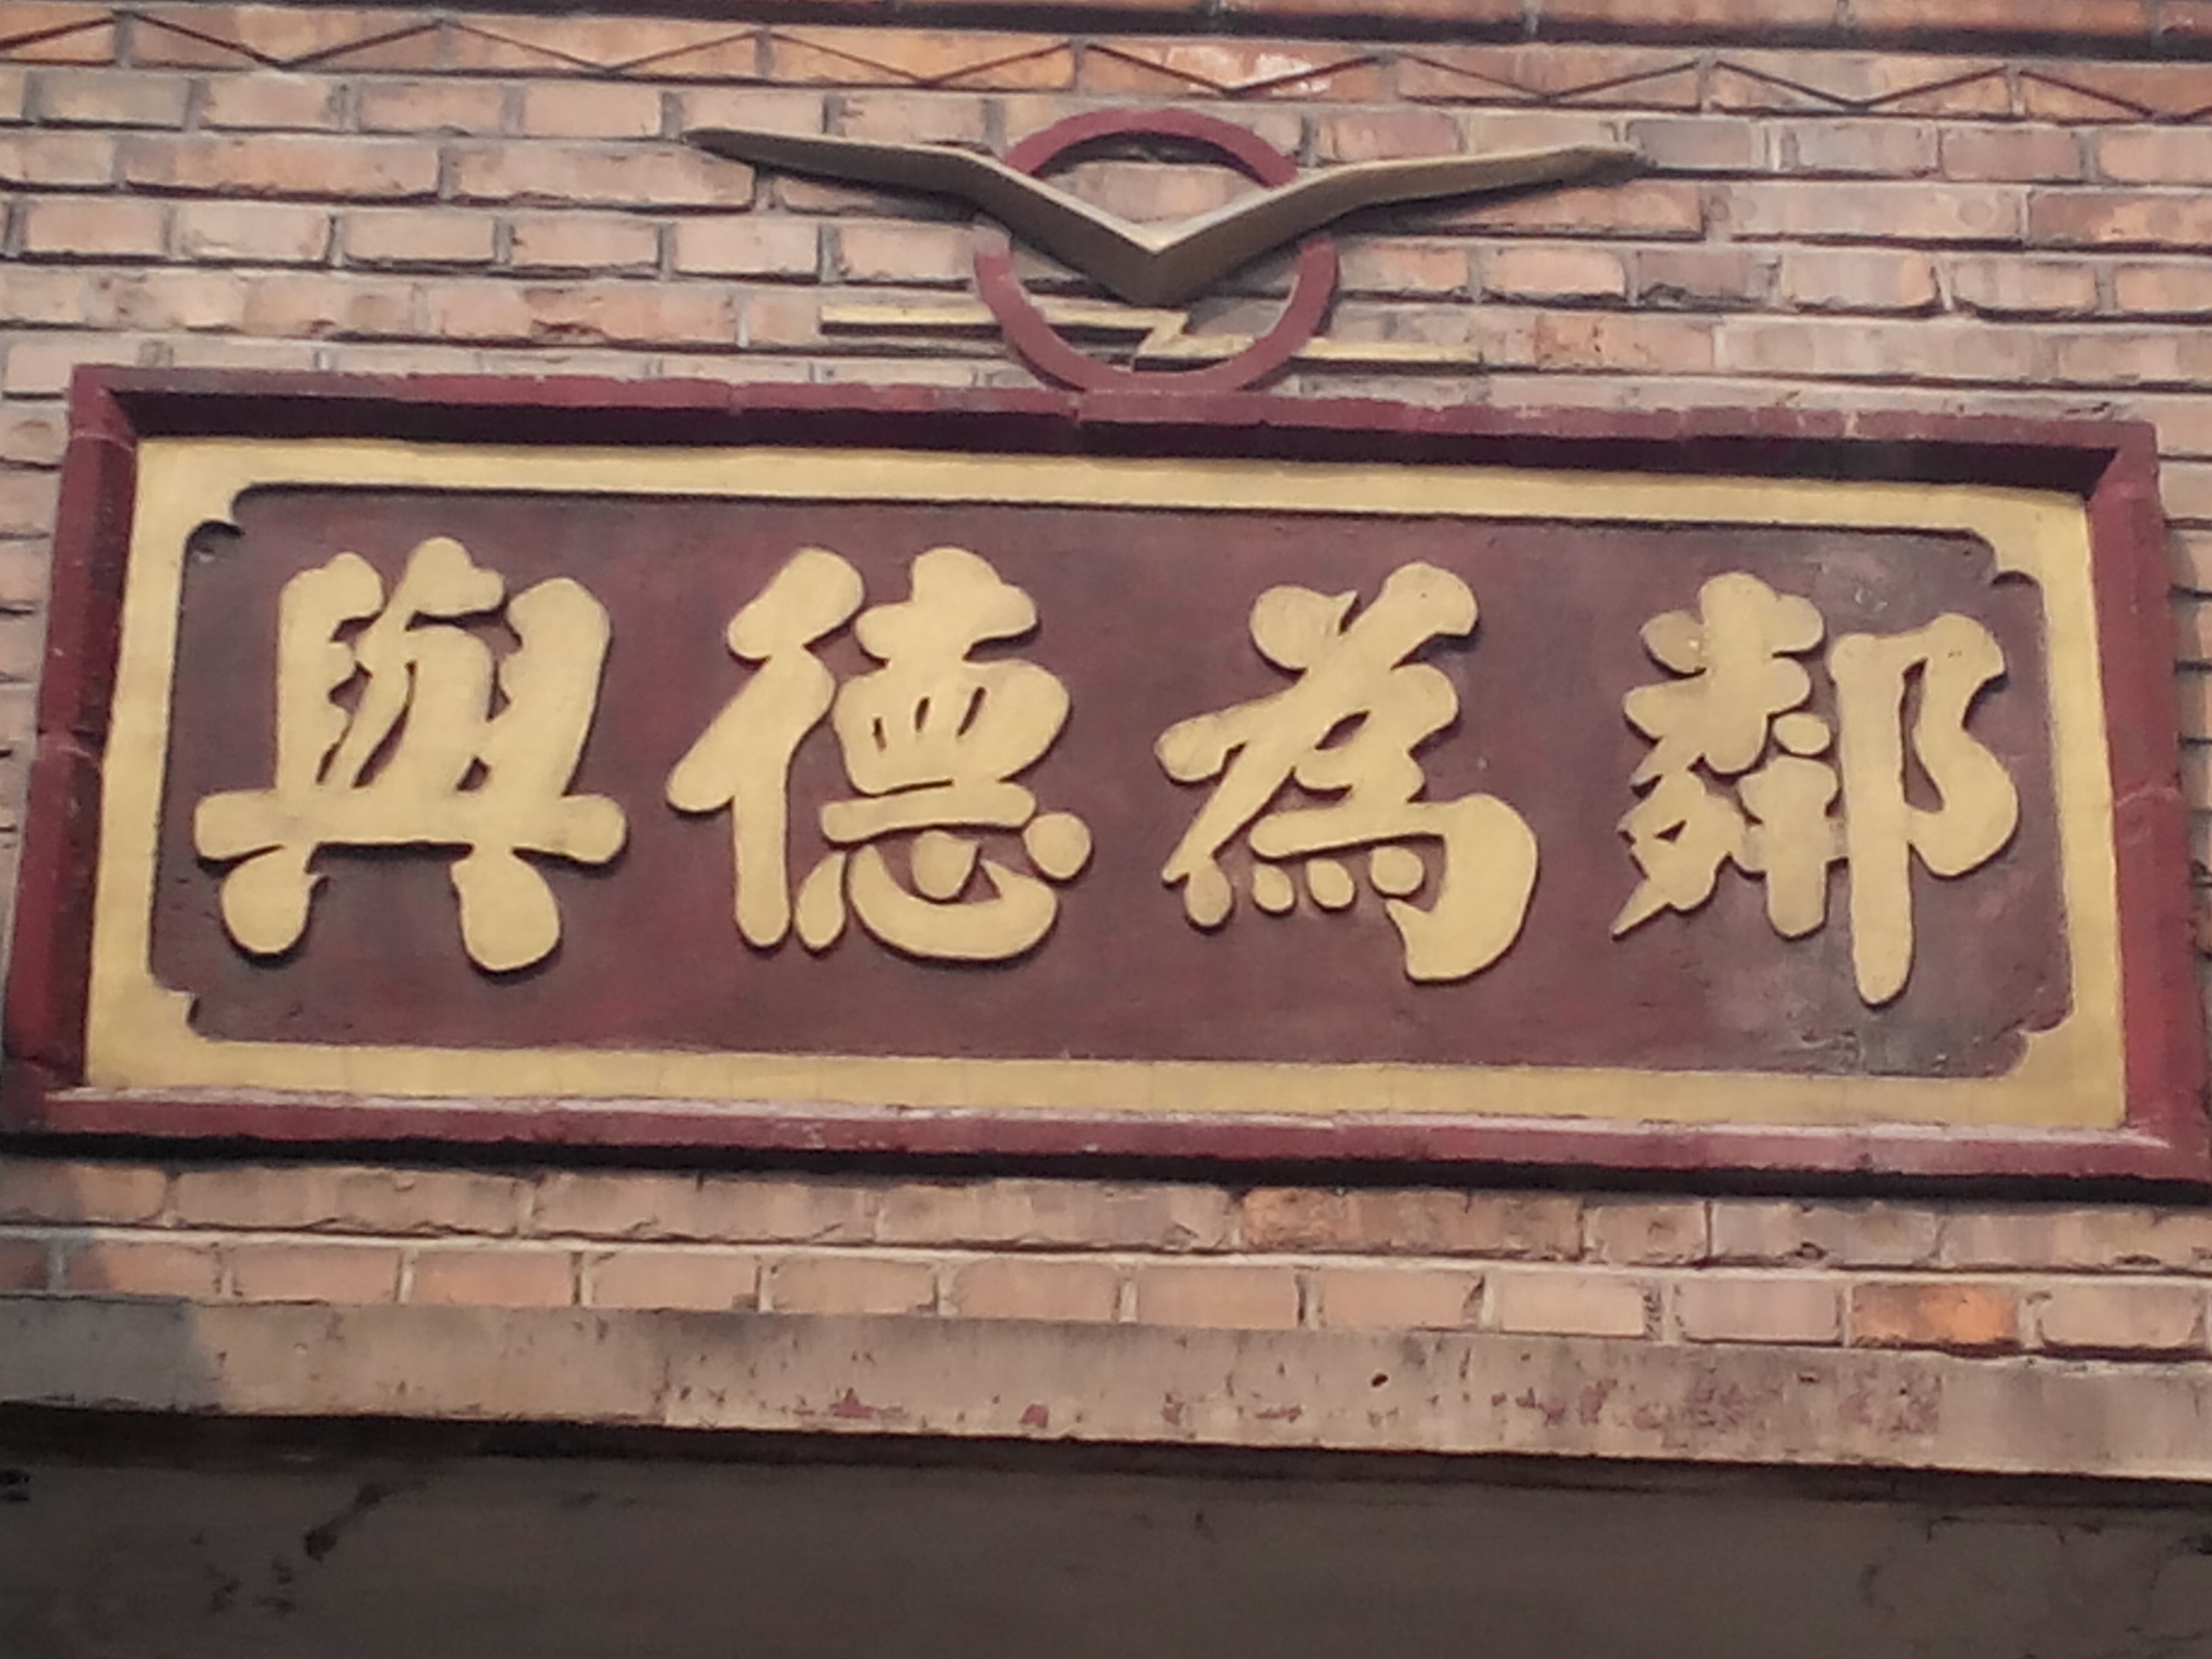 河北省太行山地区的武安,小小门匾吸引了人们的眼球